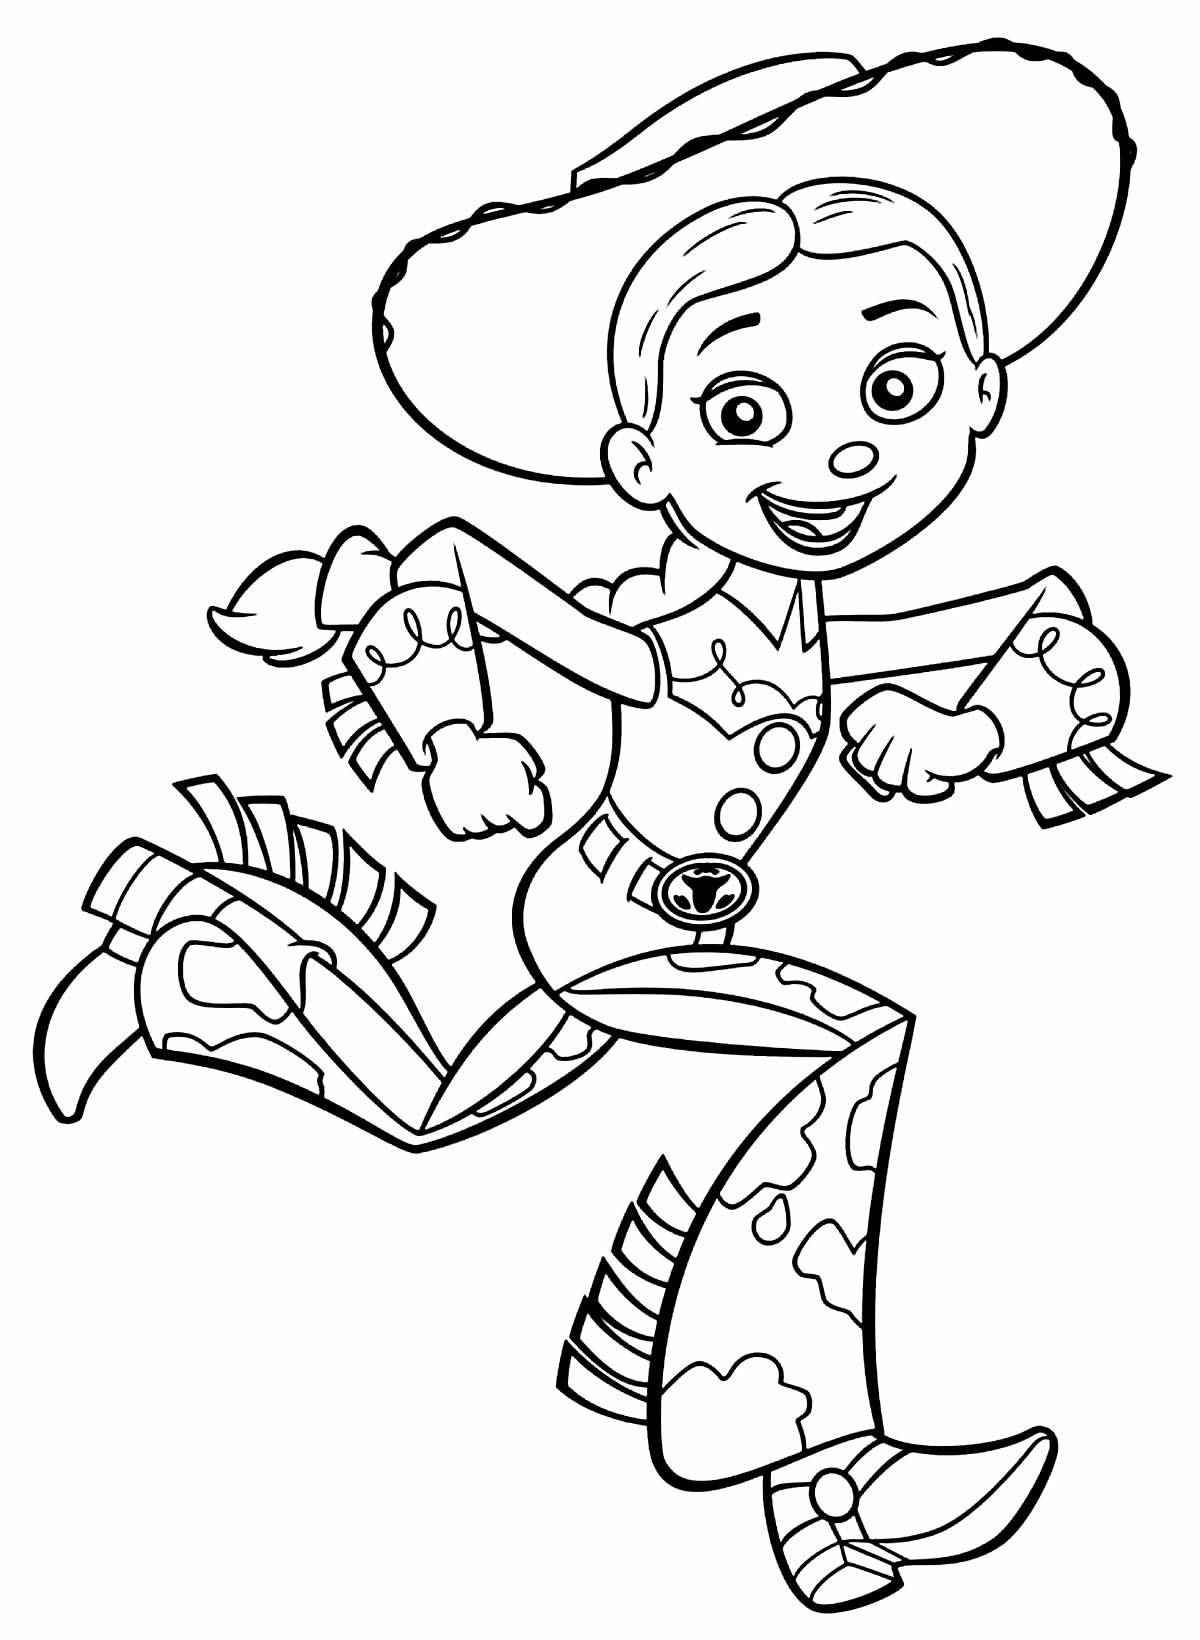 Imagem do Toy Story para colorir